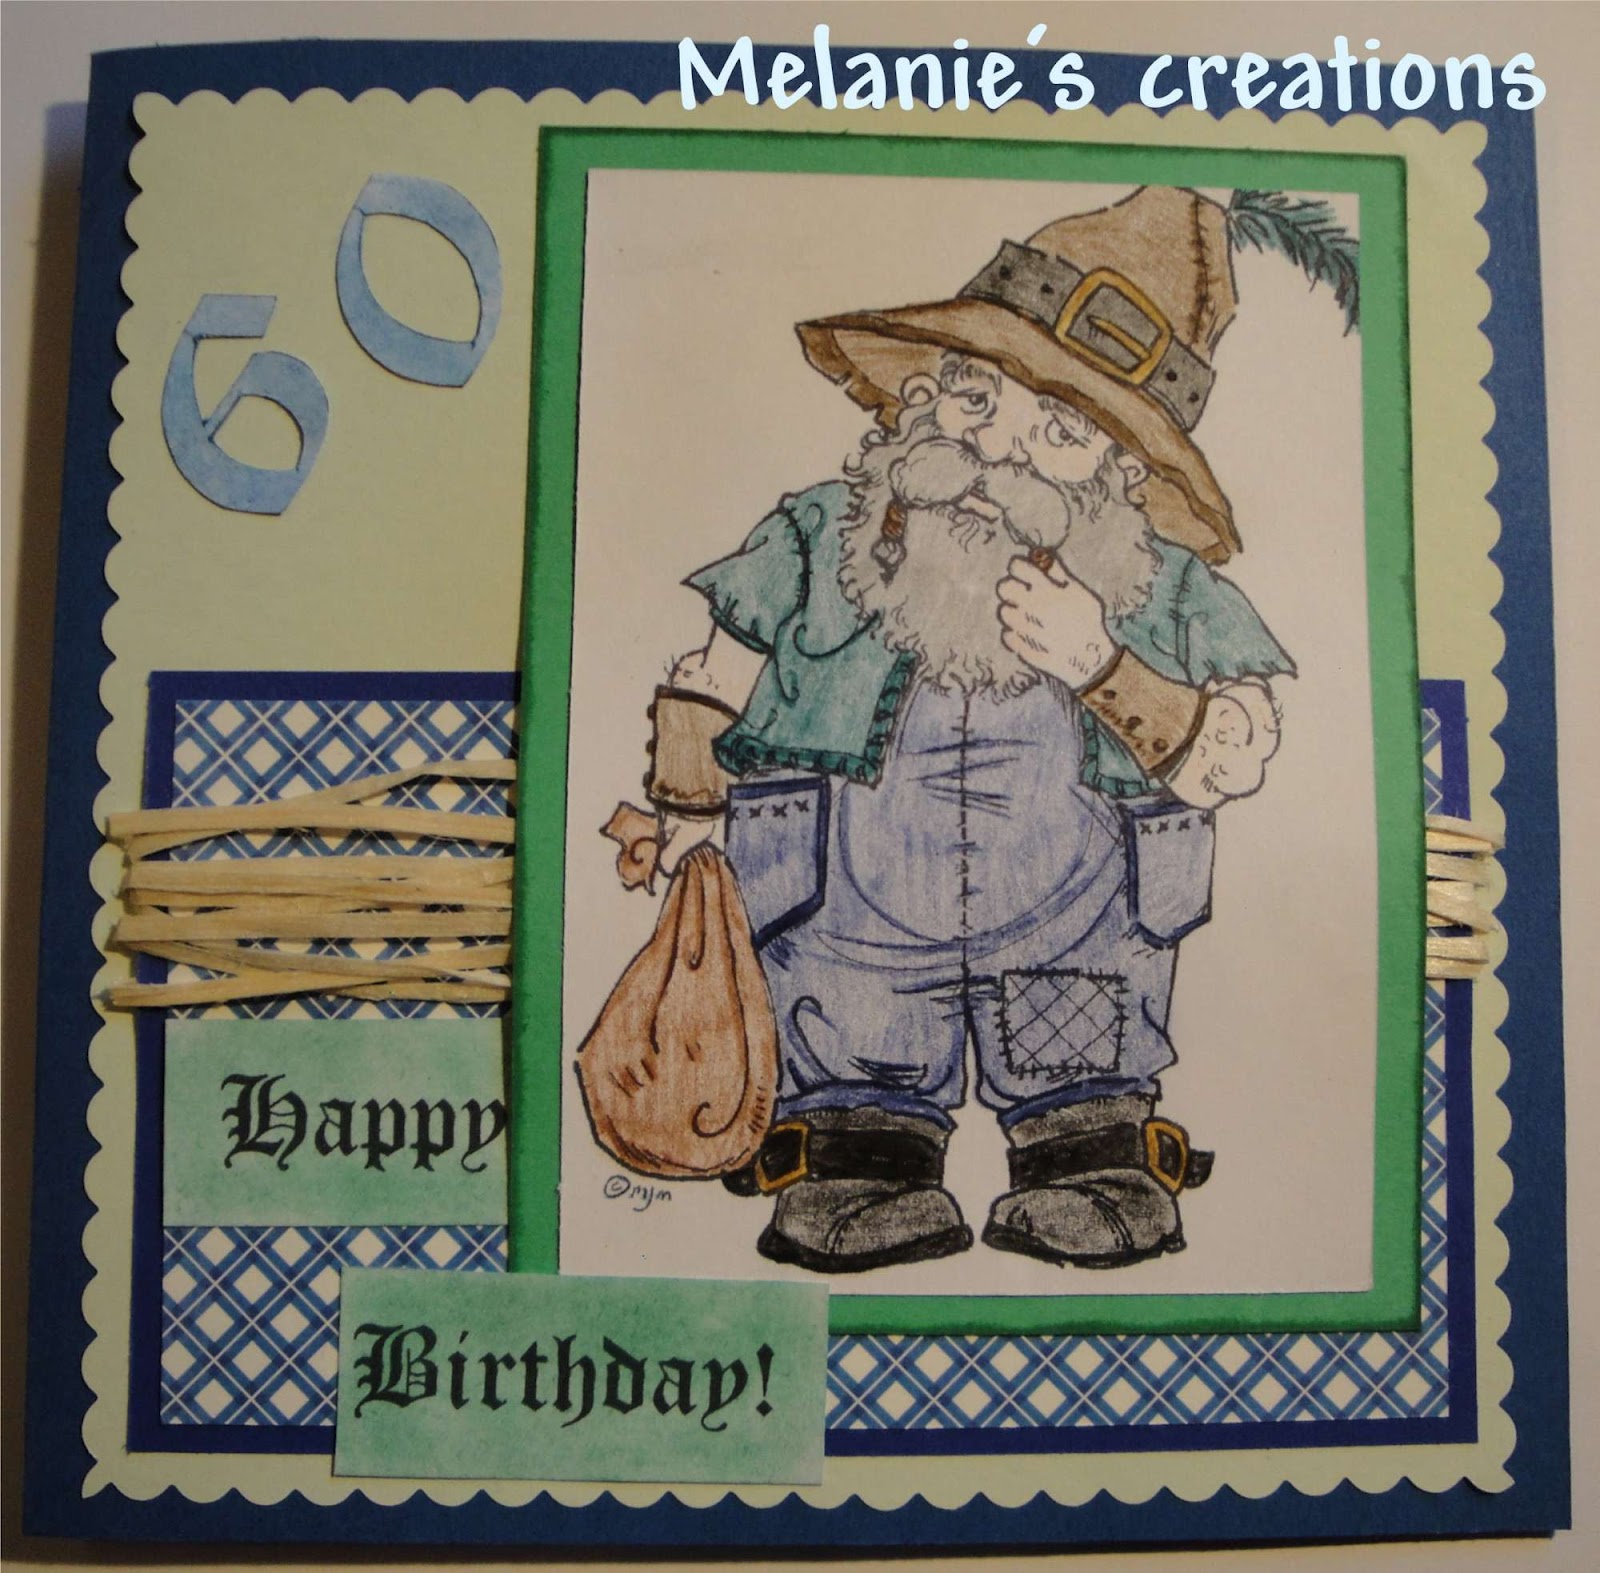 http://1.bp.blogspot.com/-V5Seu7dMY_w/T8JkKP91msI/AAAAAAAAAu8/ReLhUtjFej4/s1600/159+Dwarf+60th+Birthday-2000.jpg